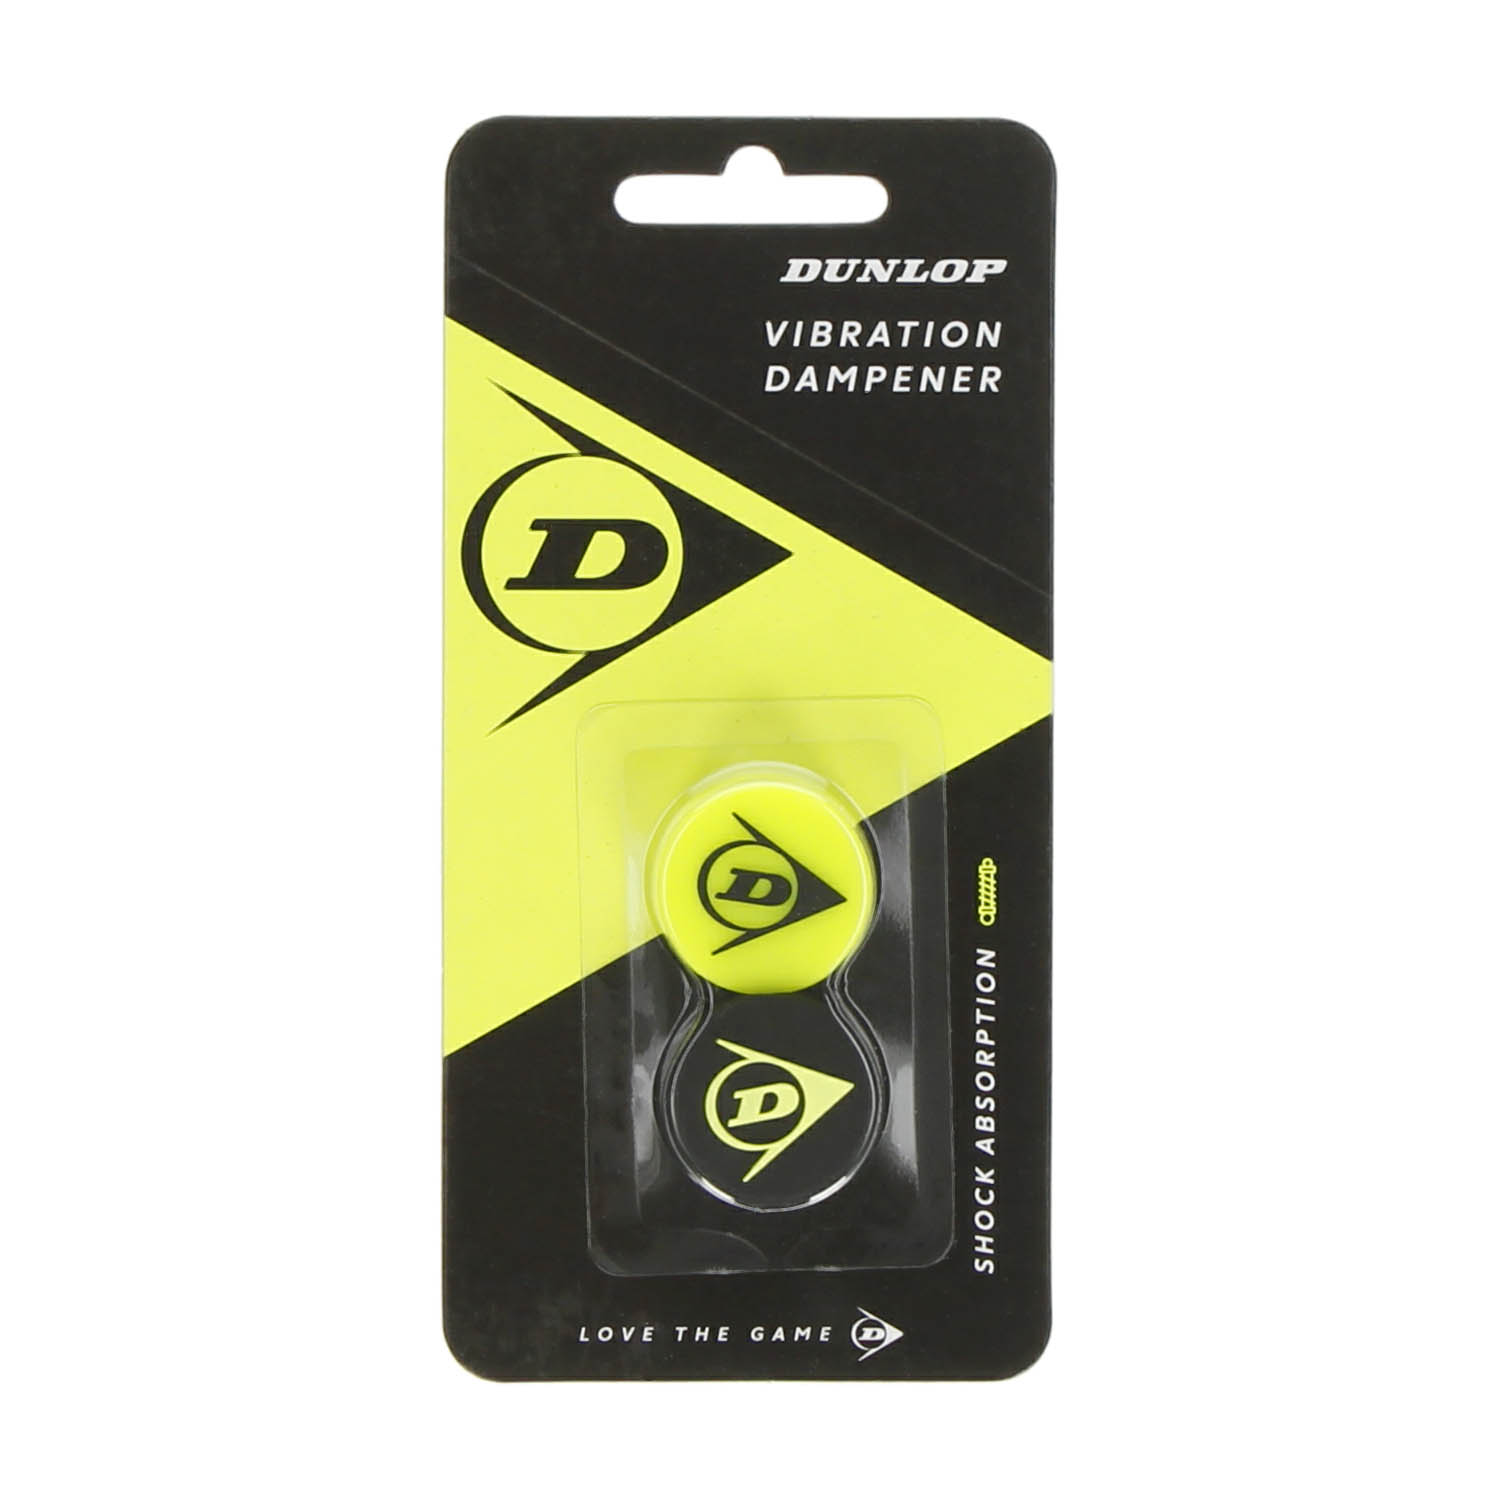 Dunlop Cx Flying x 2 Dampener - Yellow/Black